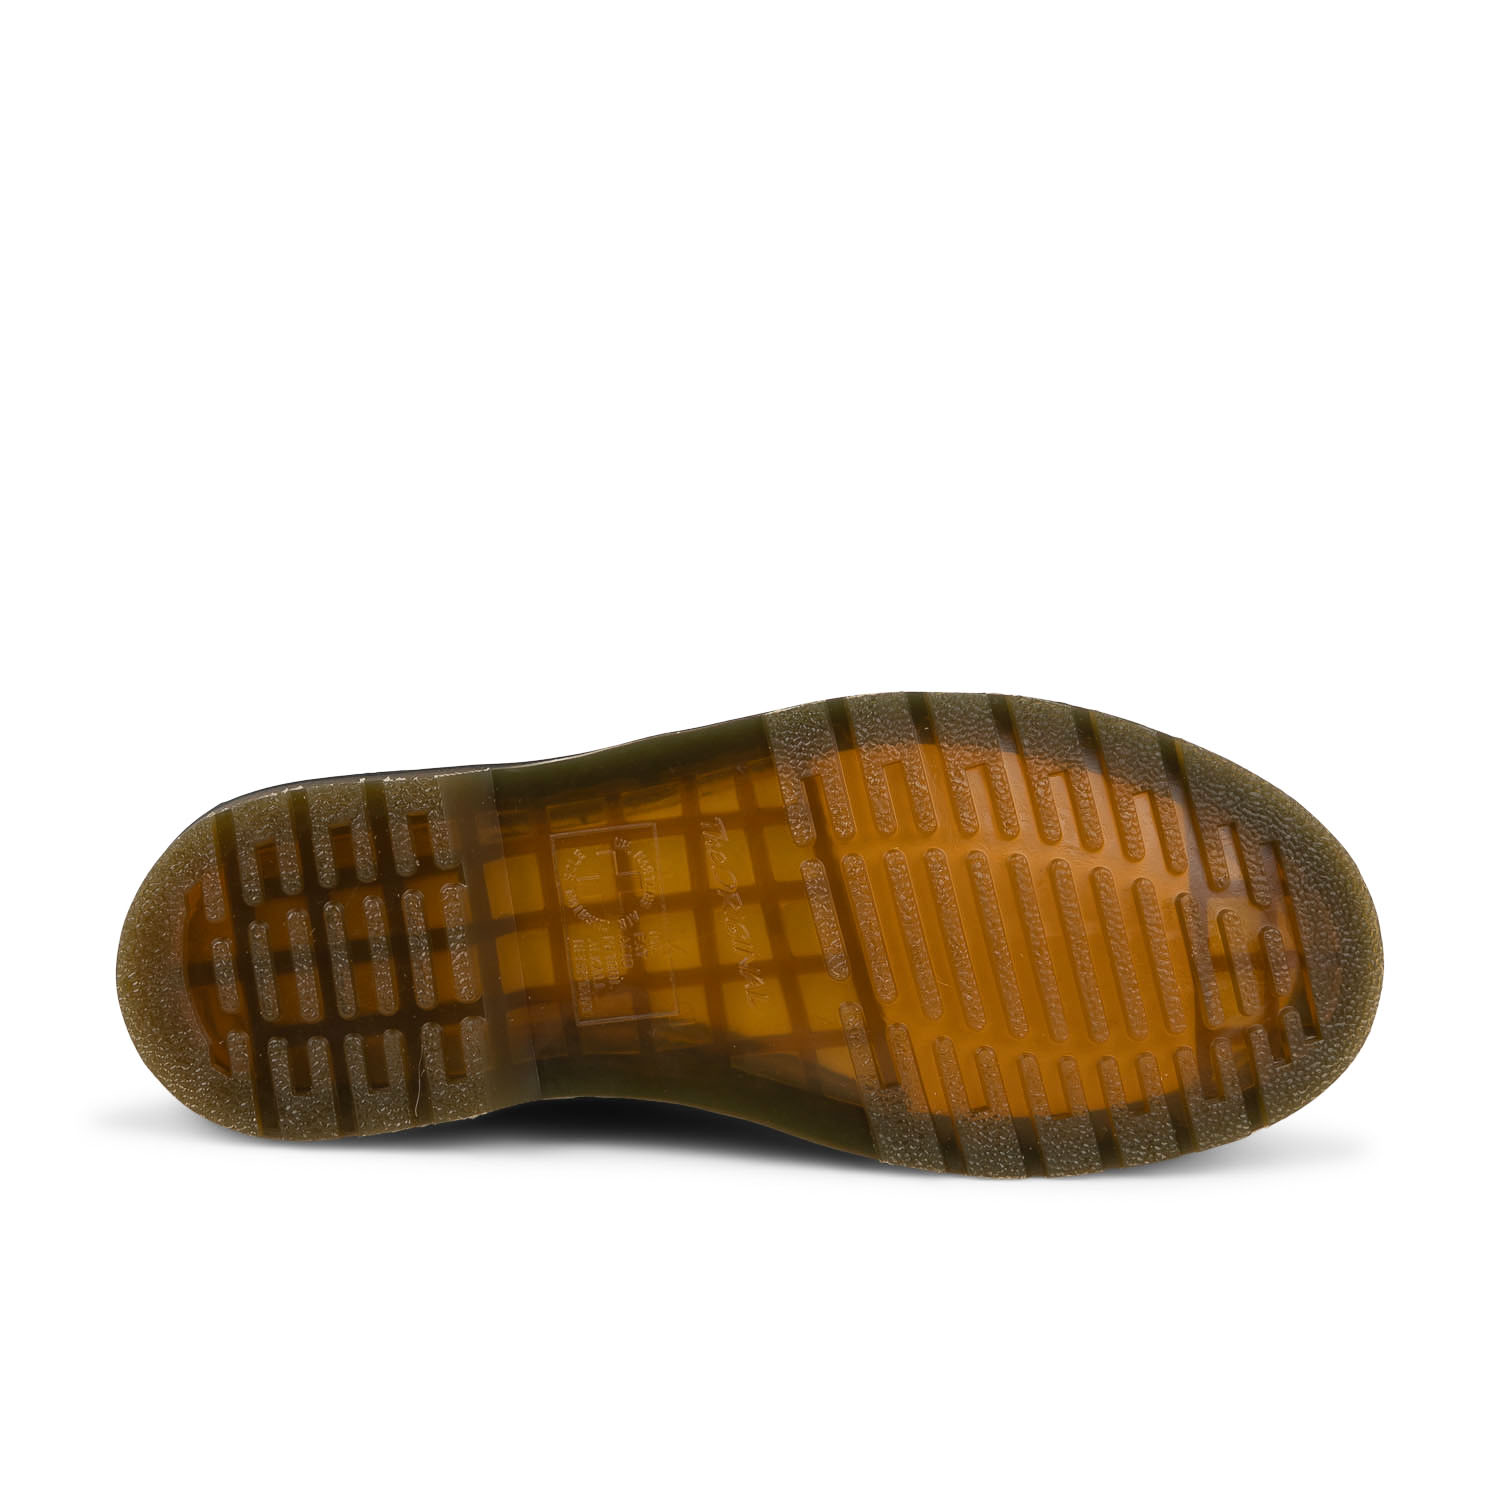 05 - 1461 TAN CARRARA -  - Chaussures à lacets - Cuir